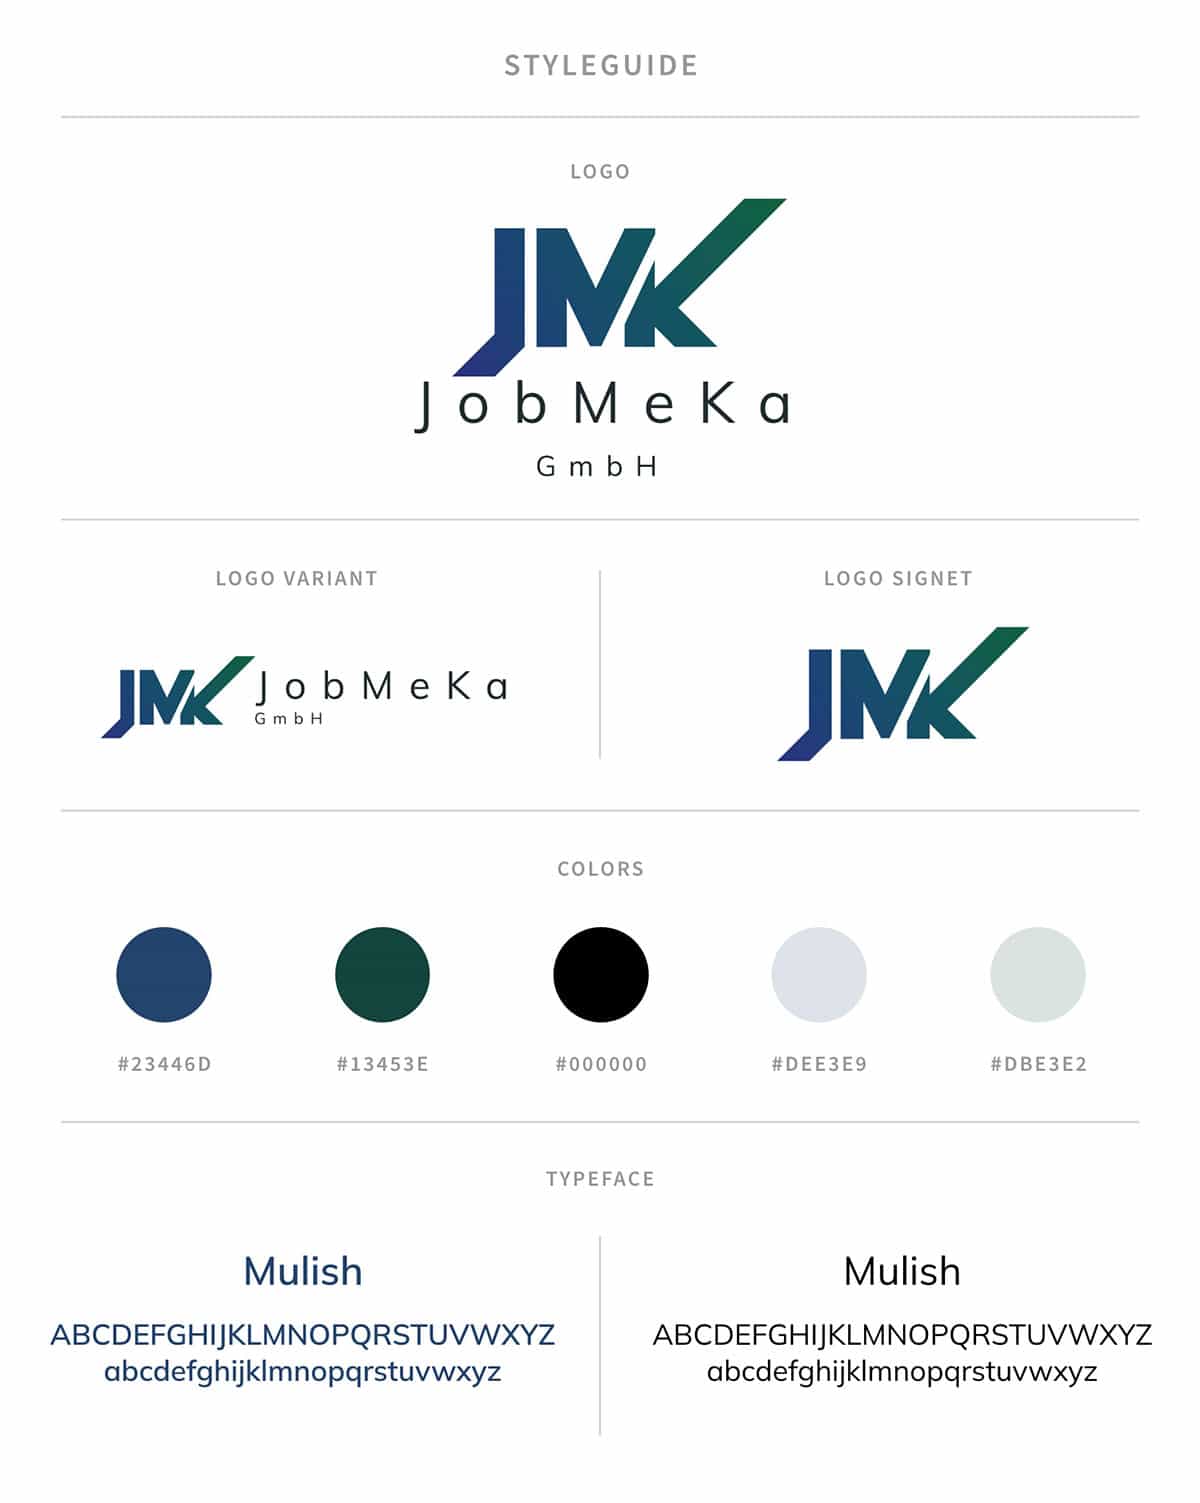 Bild zeigt einen Styleguide den ich für die JobMeka GmbH erstellt habe